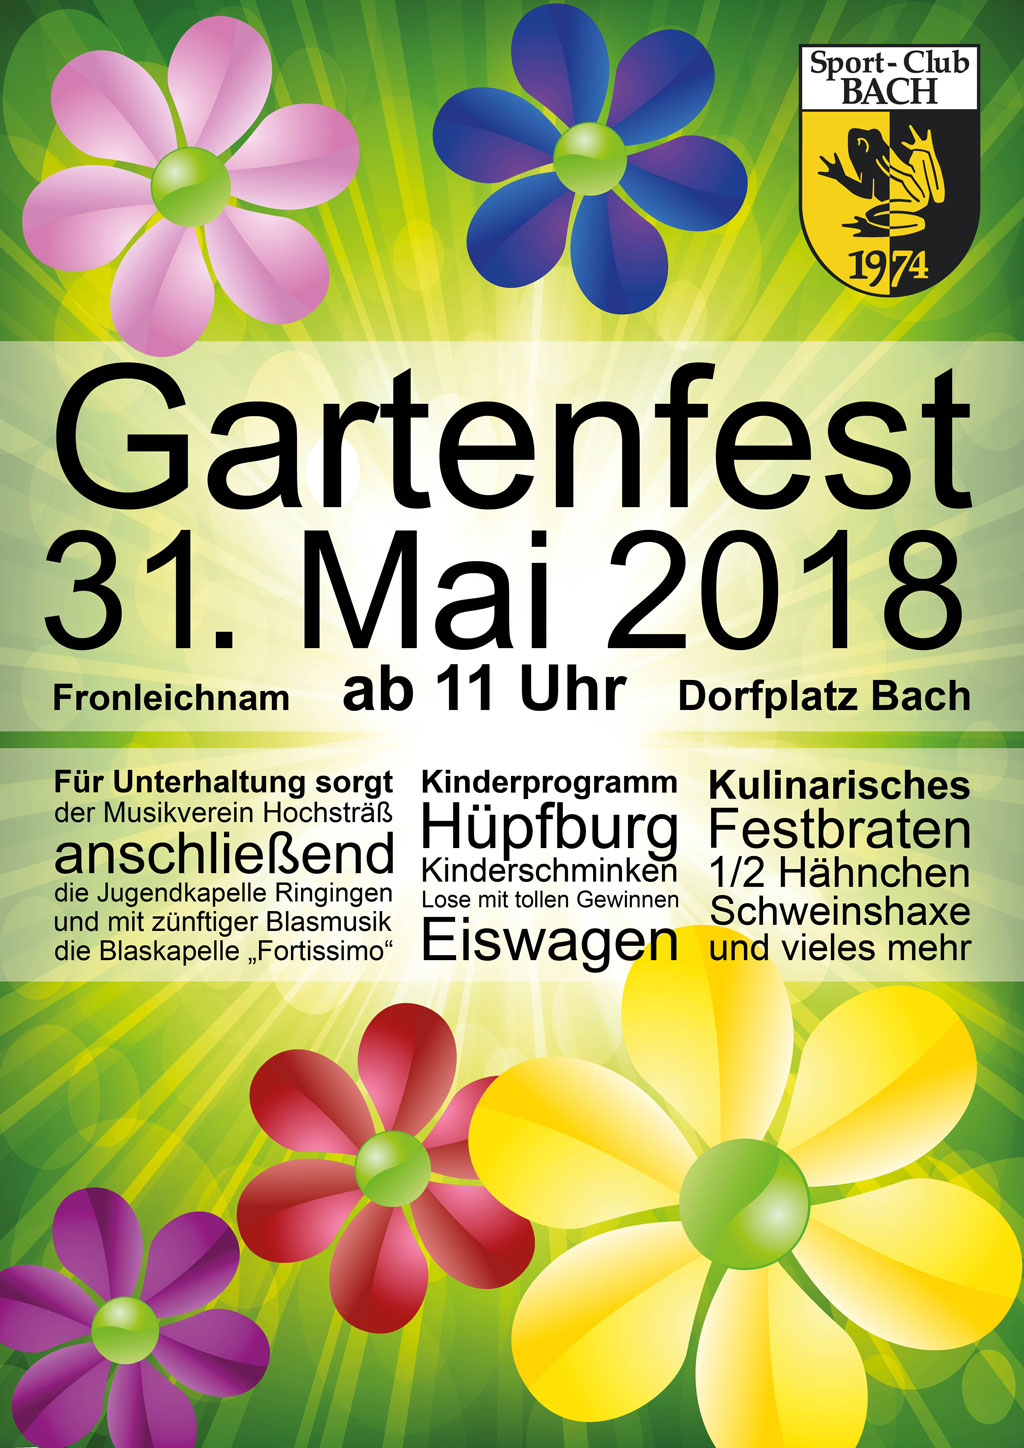 Gartenfest am 31. Mai 2018